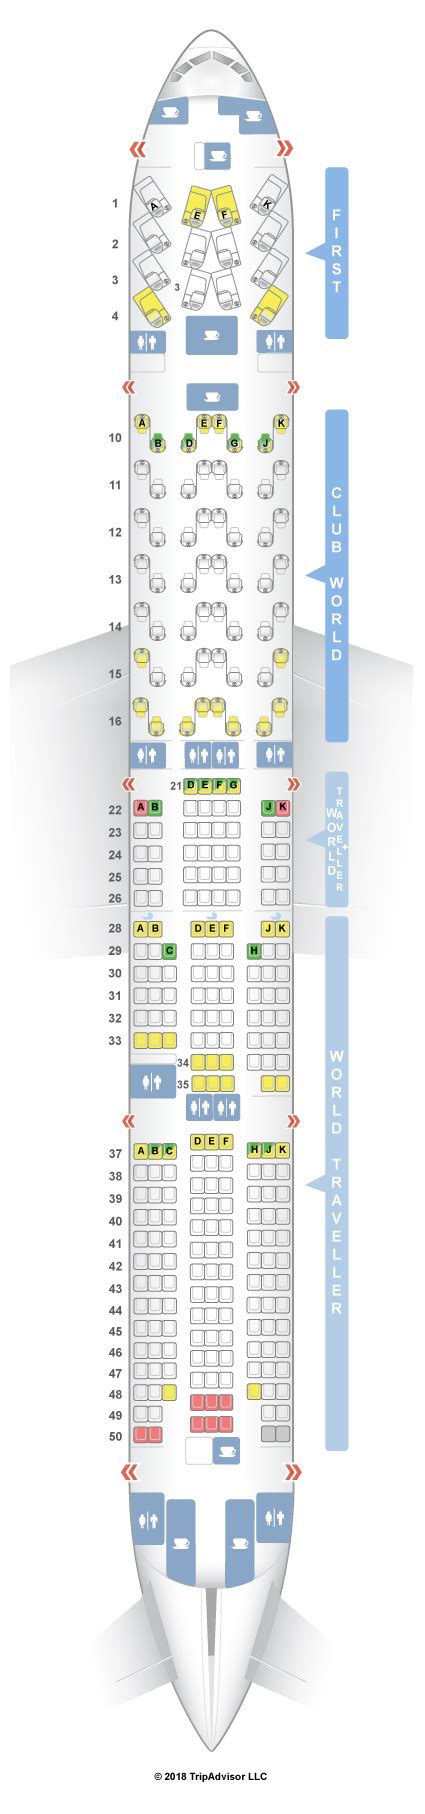 Seatguru Seat Map British Airways Boeing 777 300 773 Four Class